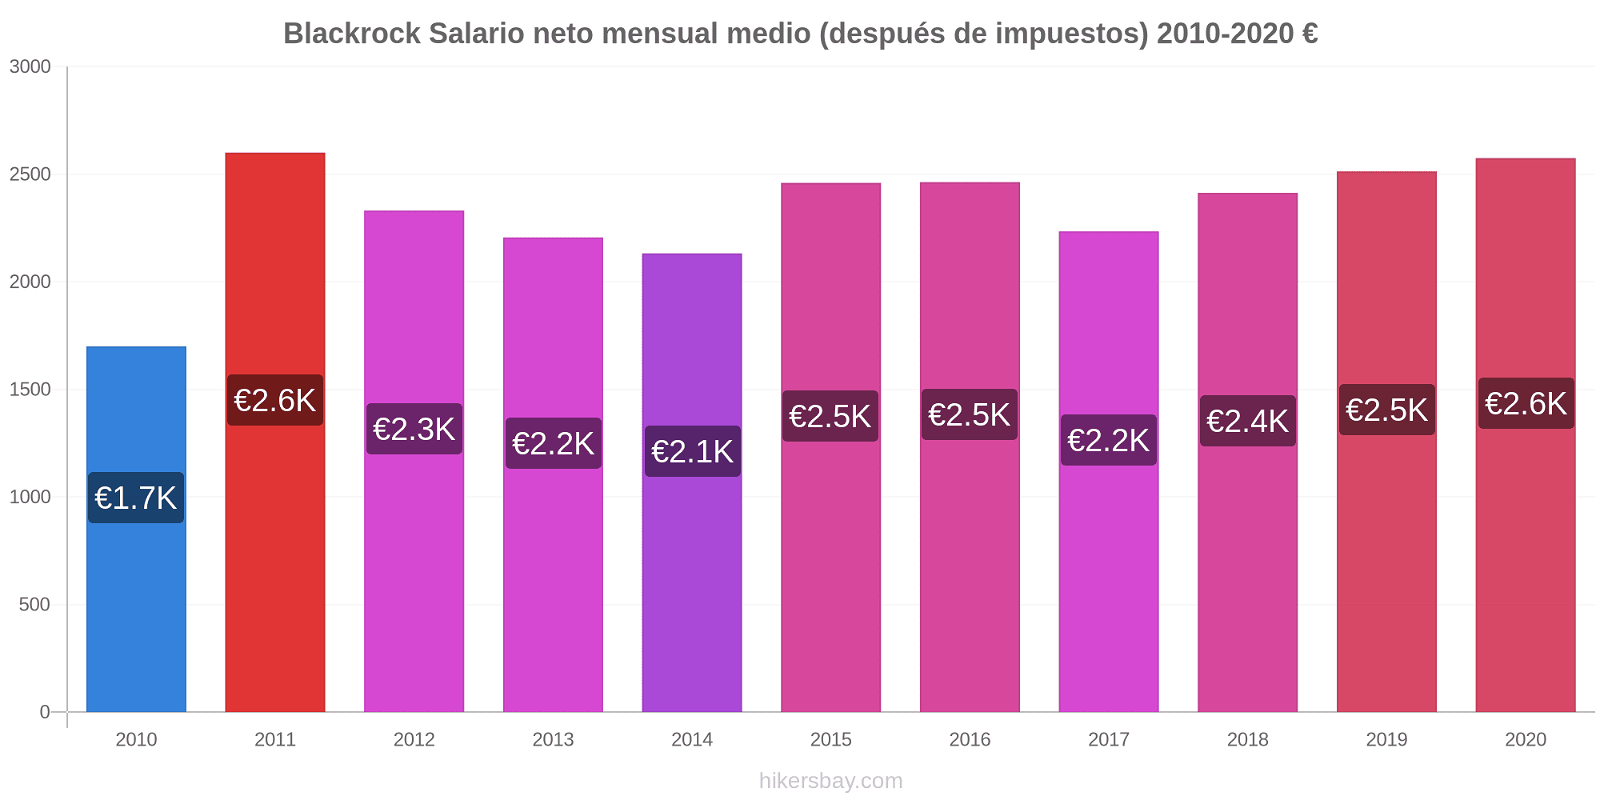 Blackrock cambios de precios Promedio mensual del salario neto (después de pagar impuestos) hikersbay.com